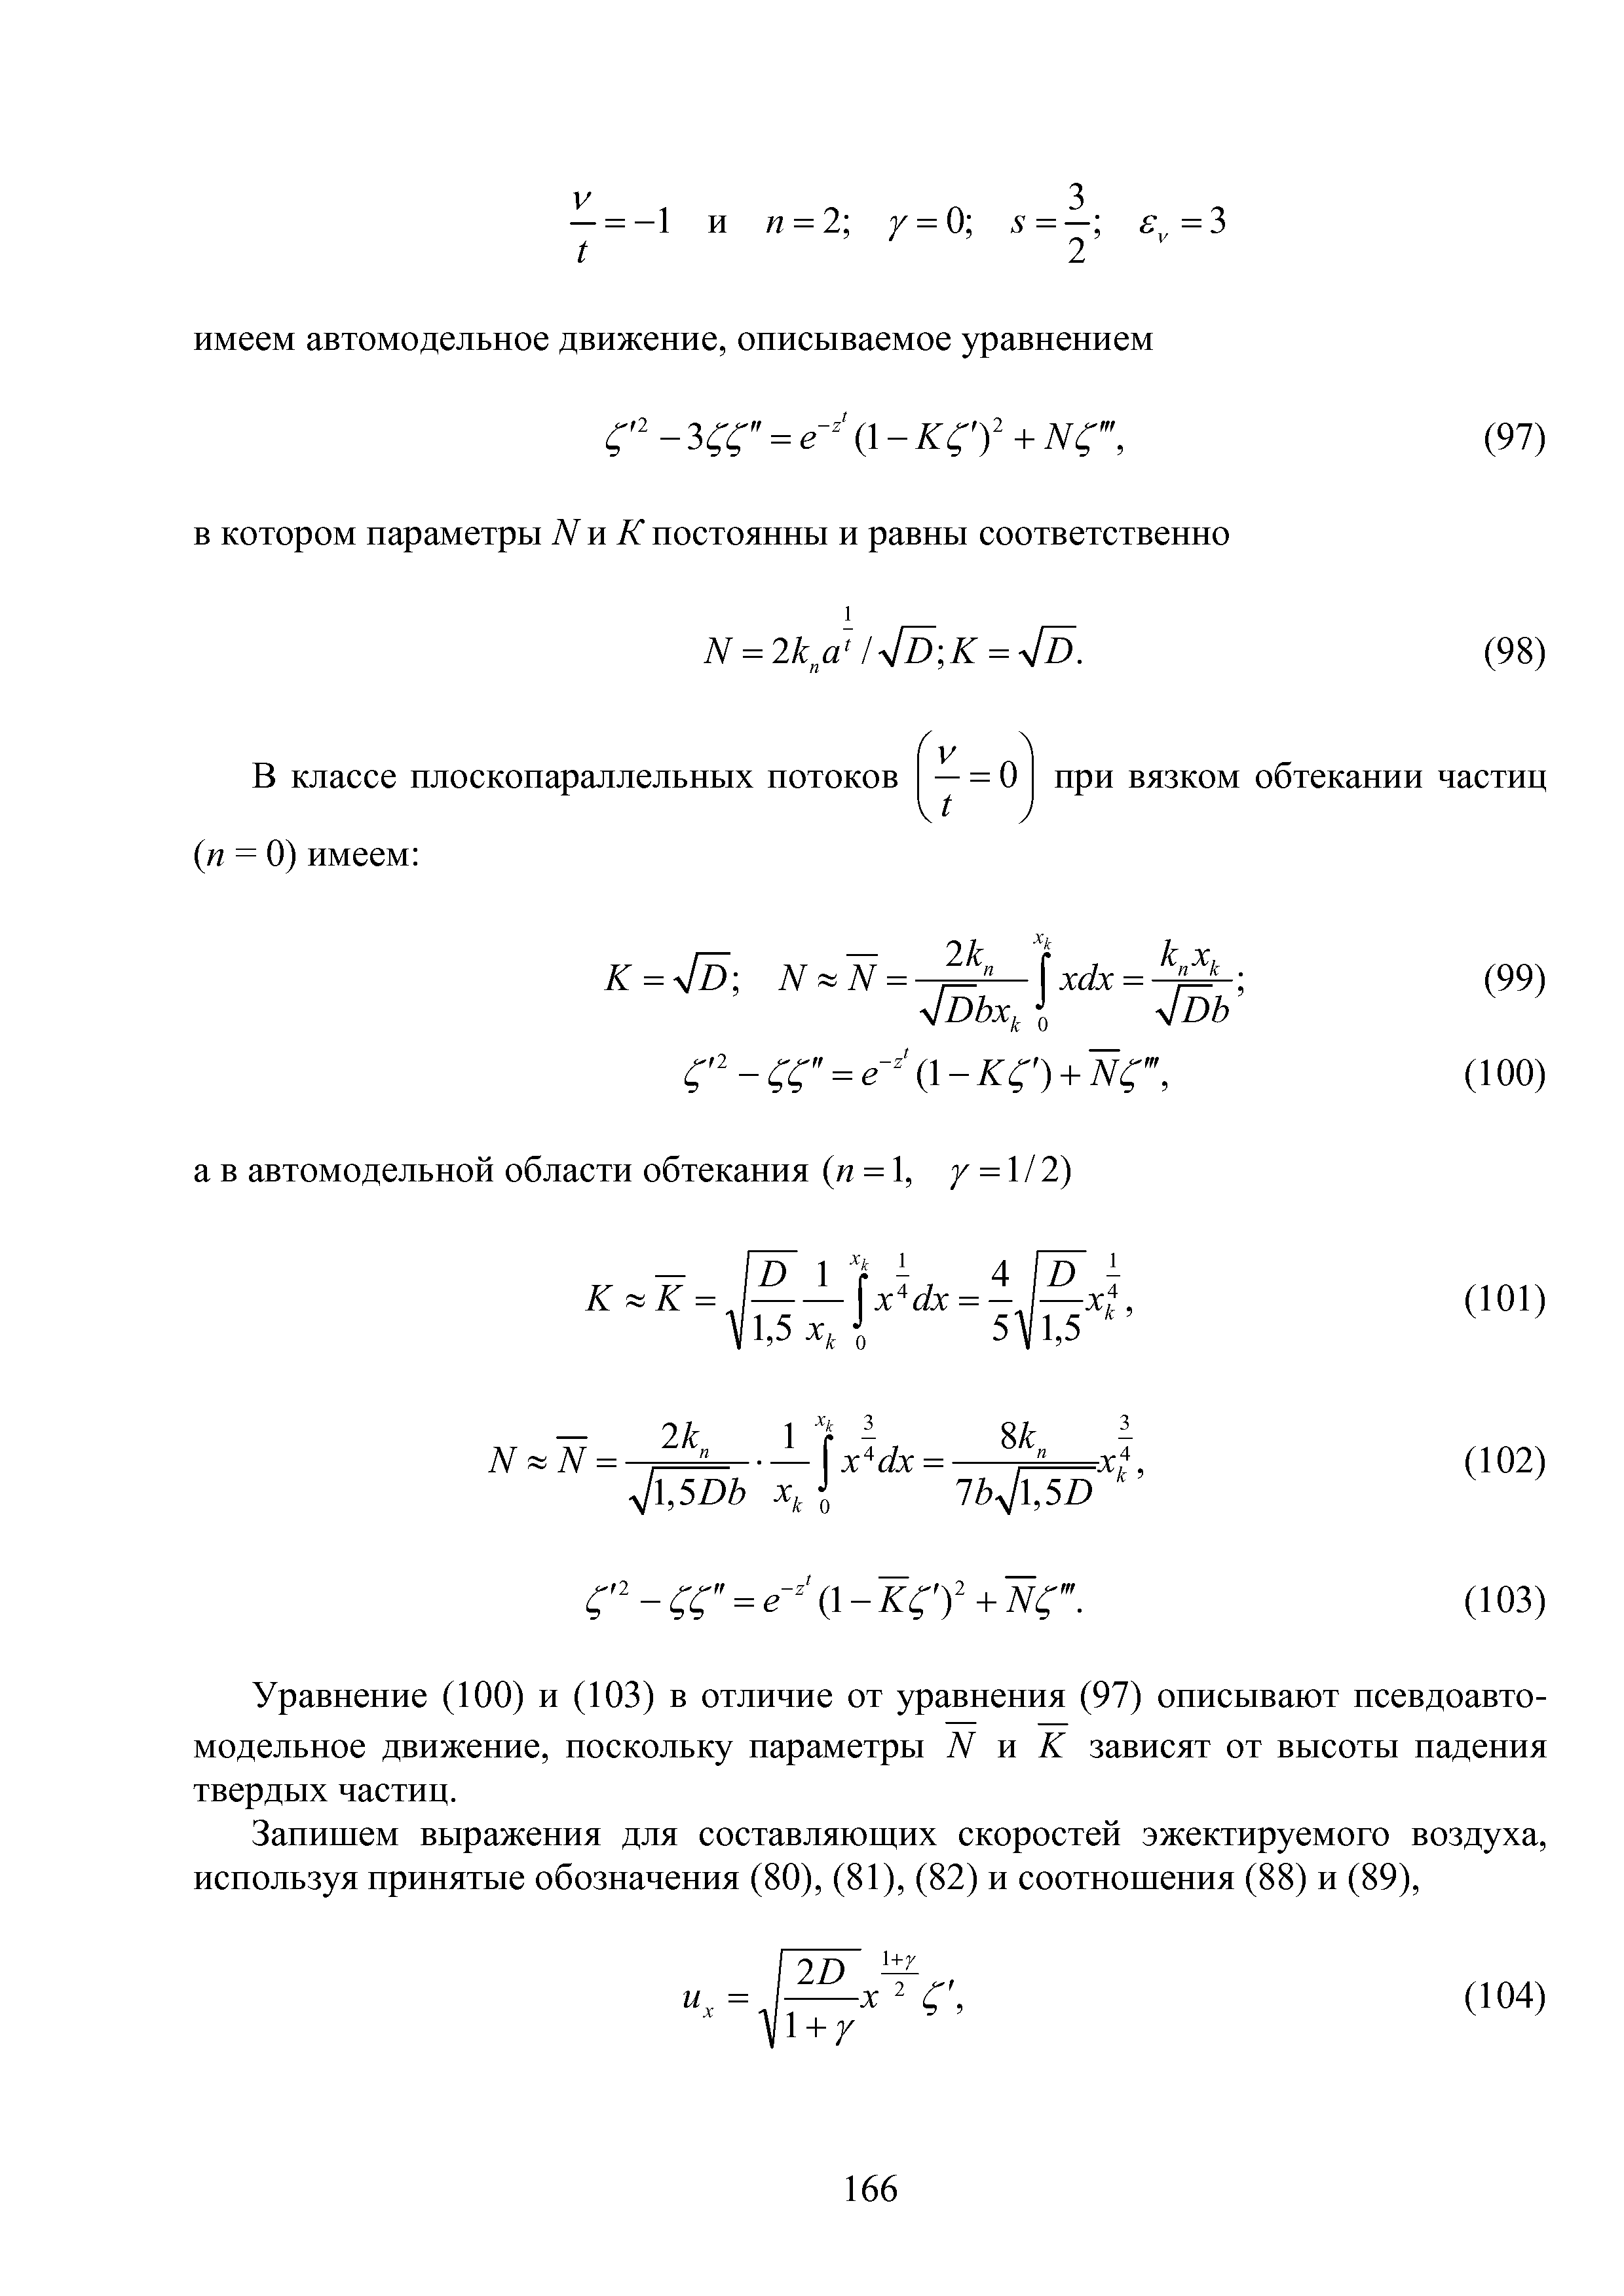 Уравнение (100) и (103) в отличие от уравнения (97) описывают псевдоавто-модельное движение, поскольку параметры N и К зависят от высоты падения твердых частиц.
